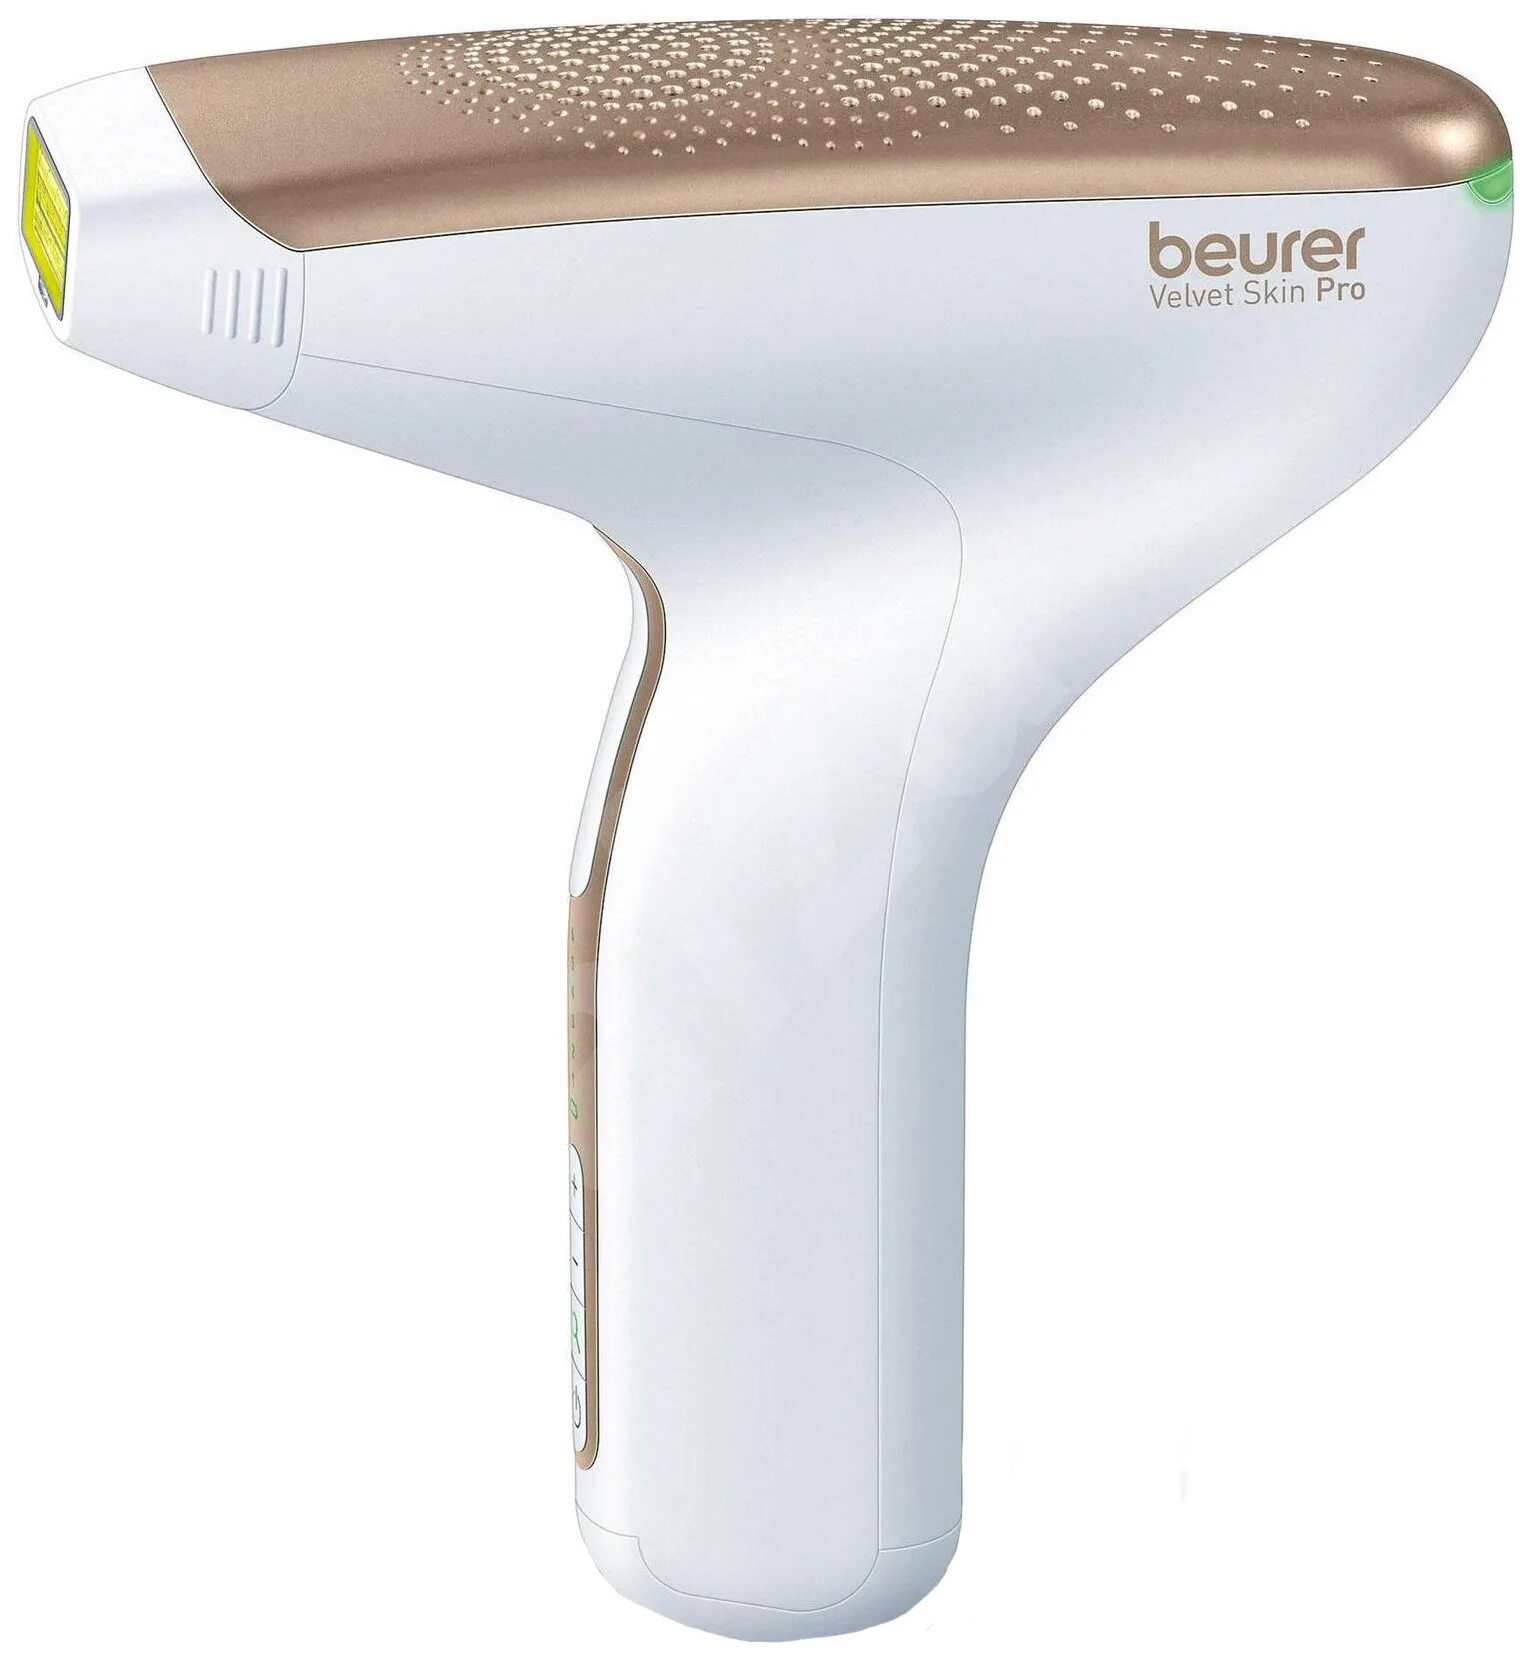 Фотоэпилятор для волос. Beurer ipl8500. Фотоэпилятор Beurer IPL Velvet Skin Pro. Фотоэпилятор Remington ipl8500. Фотоэпилятор Beurer ipl8500, белый/золотистый.